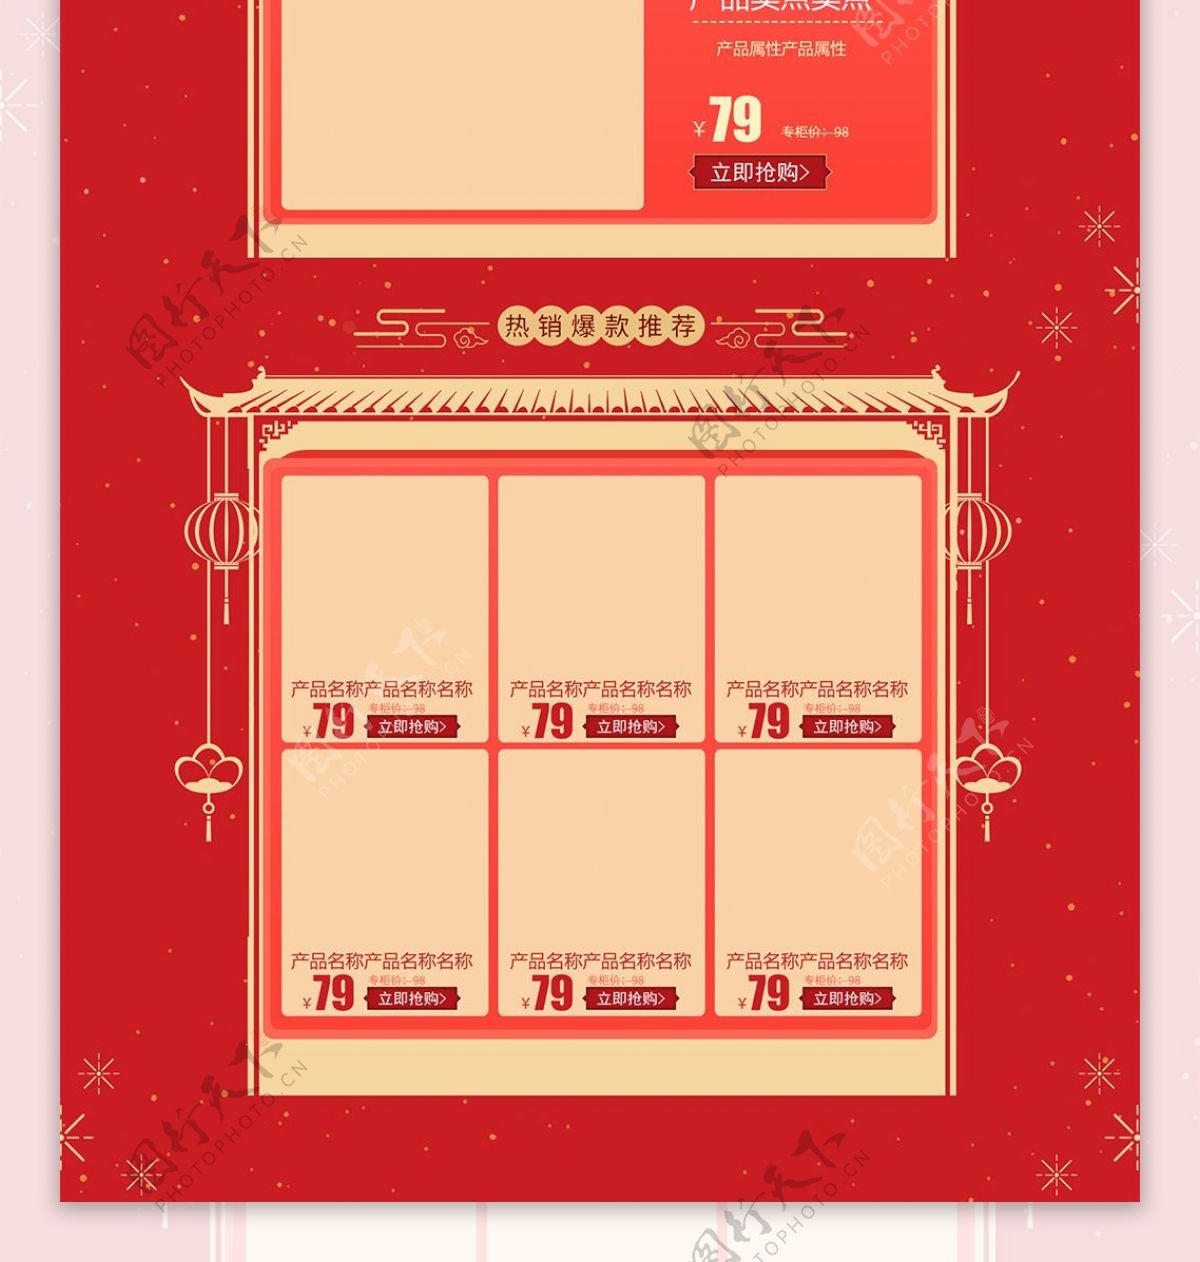 红色喜庆跨年新愿季狂欢夜电商首页促销模板